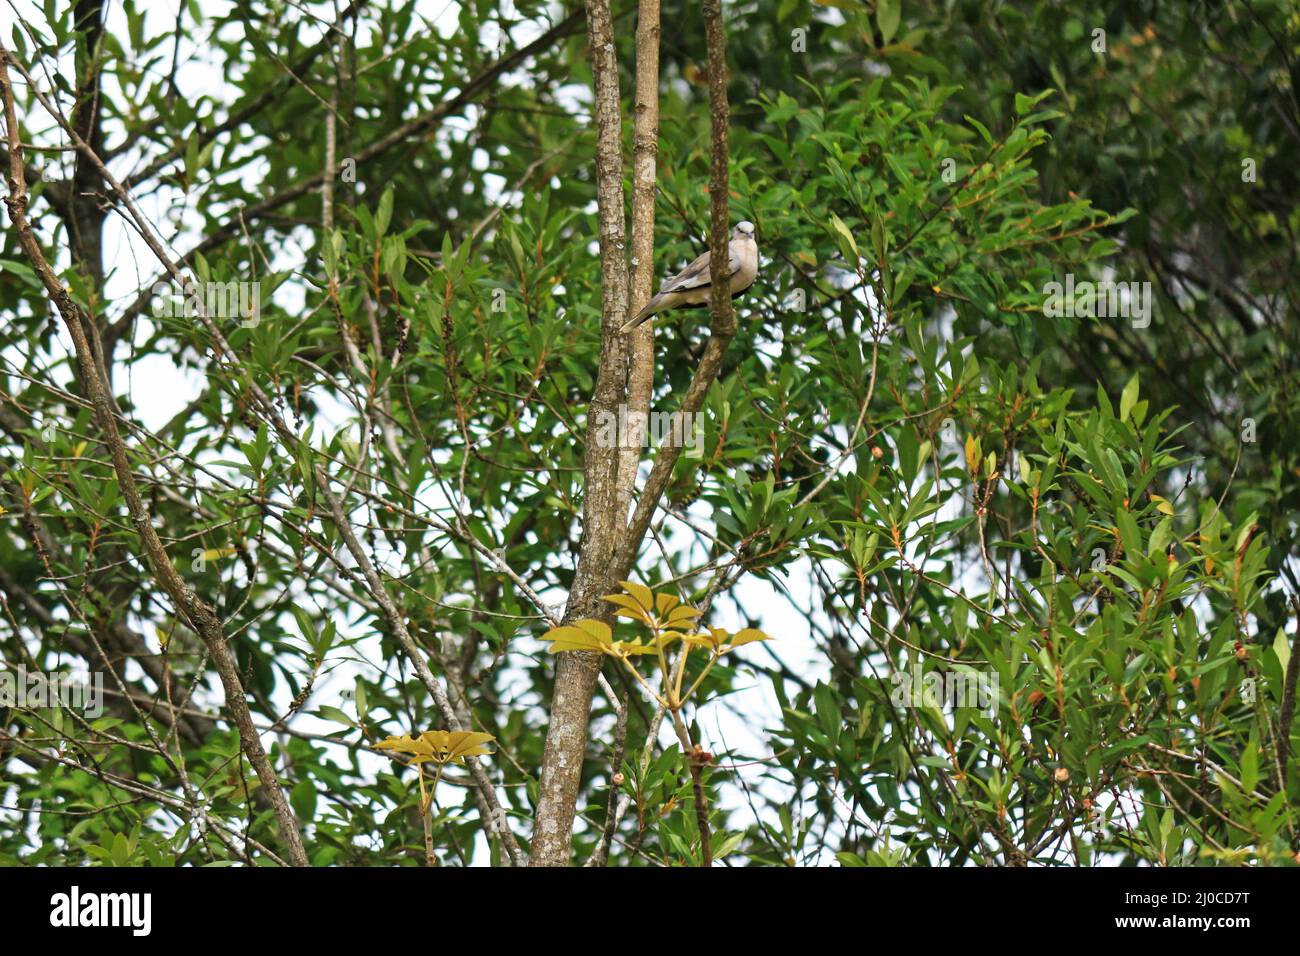 Entre las ramas y las hojas exuberantes de un árbol, una pequeña paloma gris está encaramada. Foto de stock